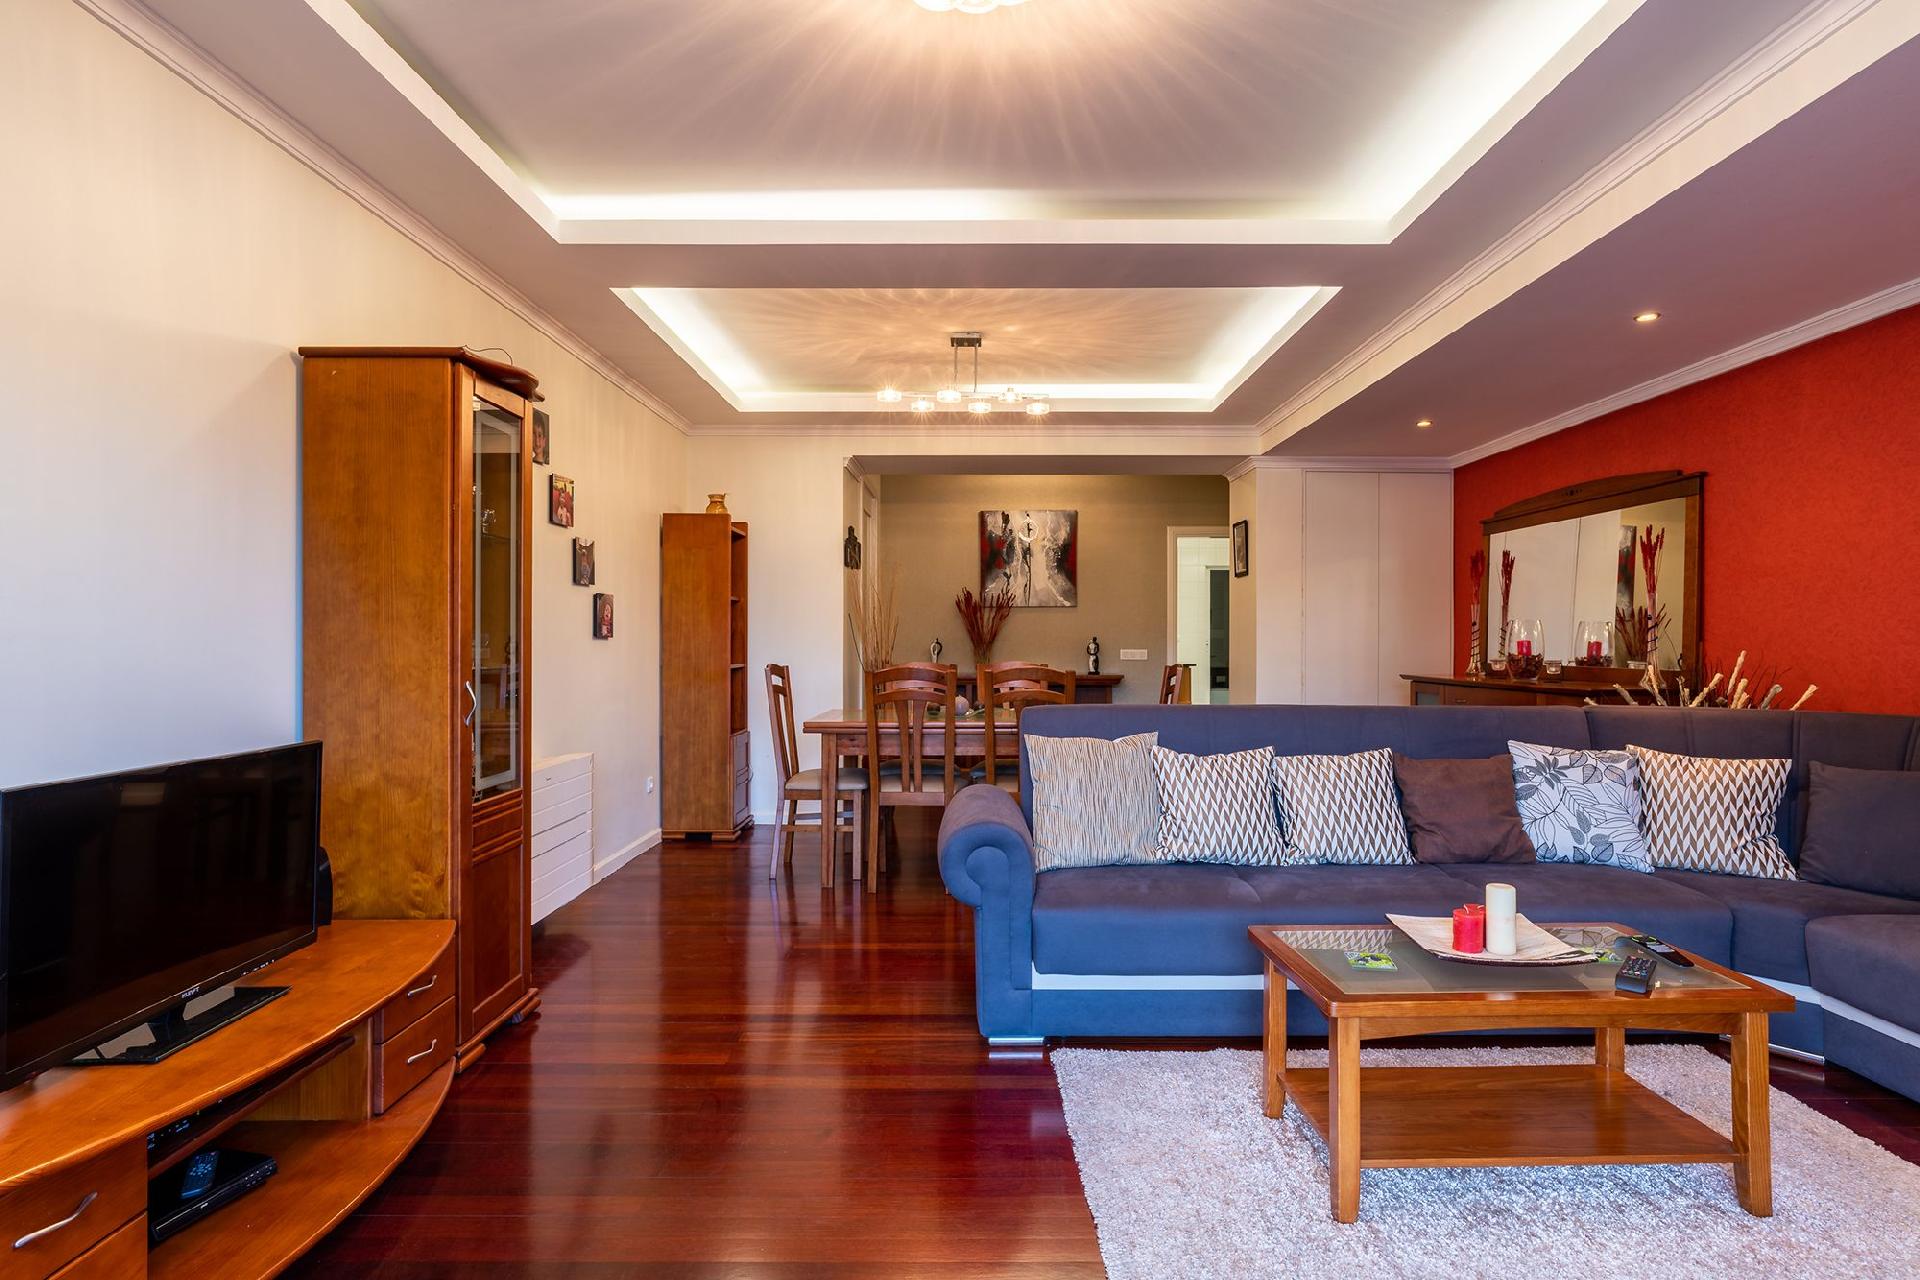 Ferienwohnung für 6 Personen ca. 130 m²   in Portugal